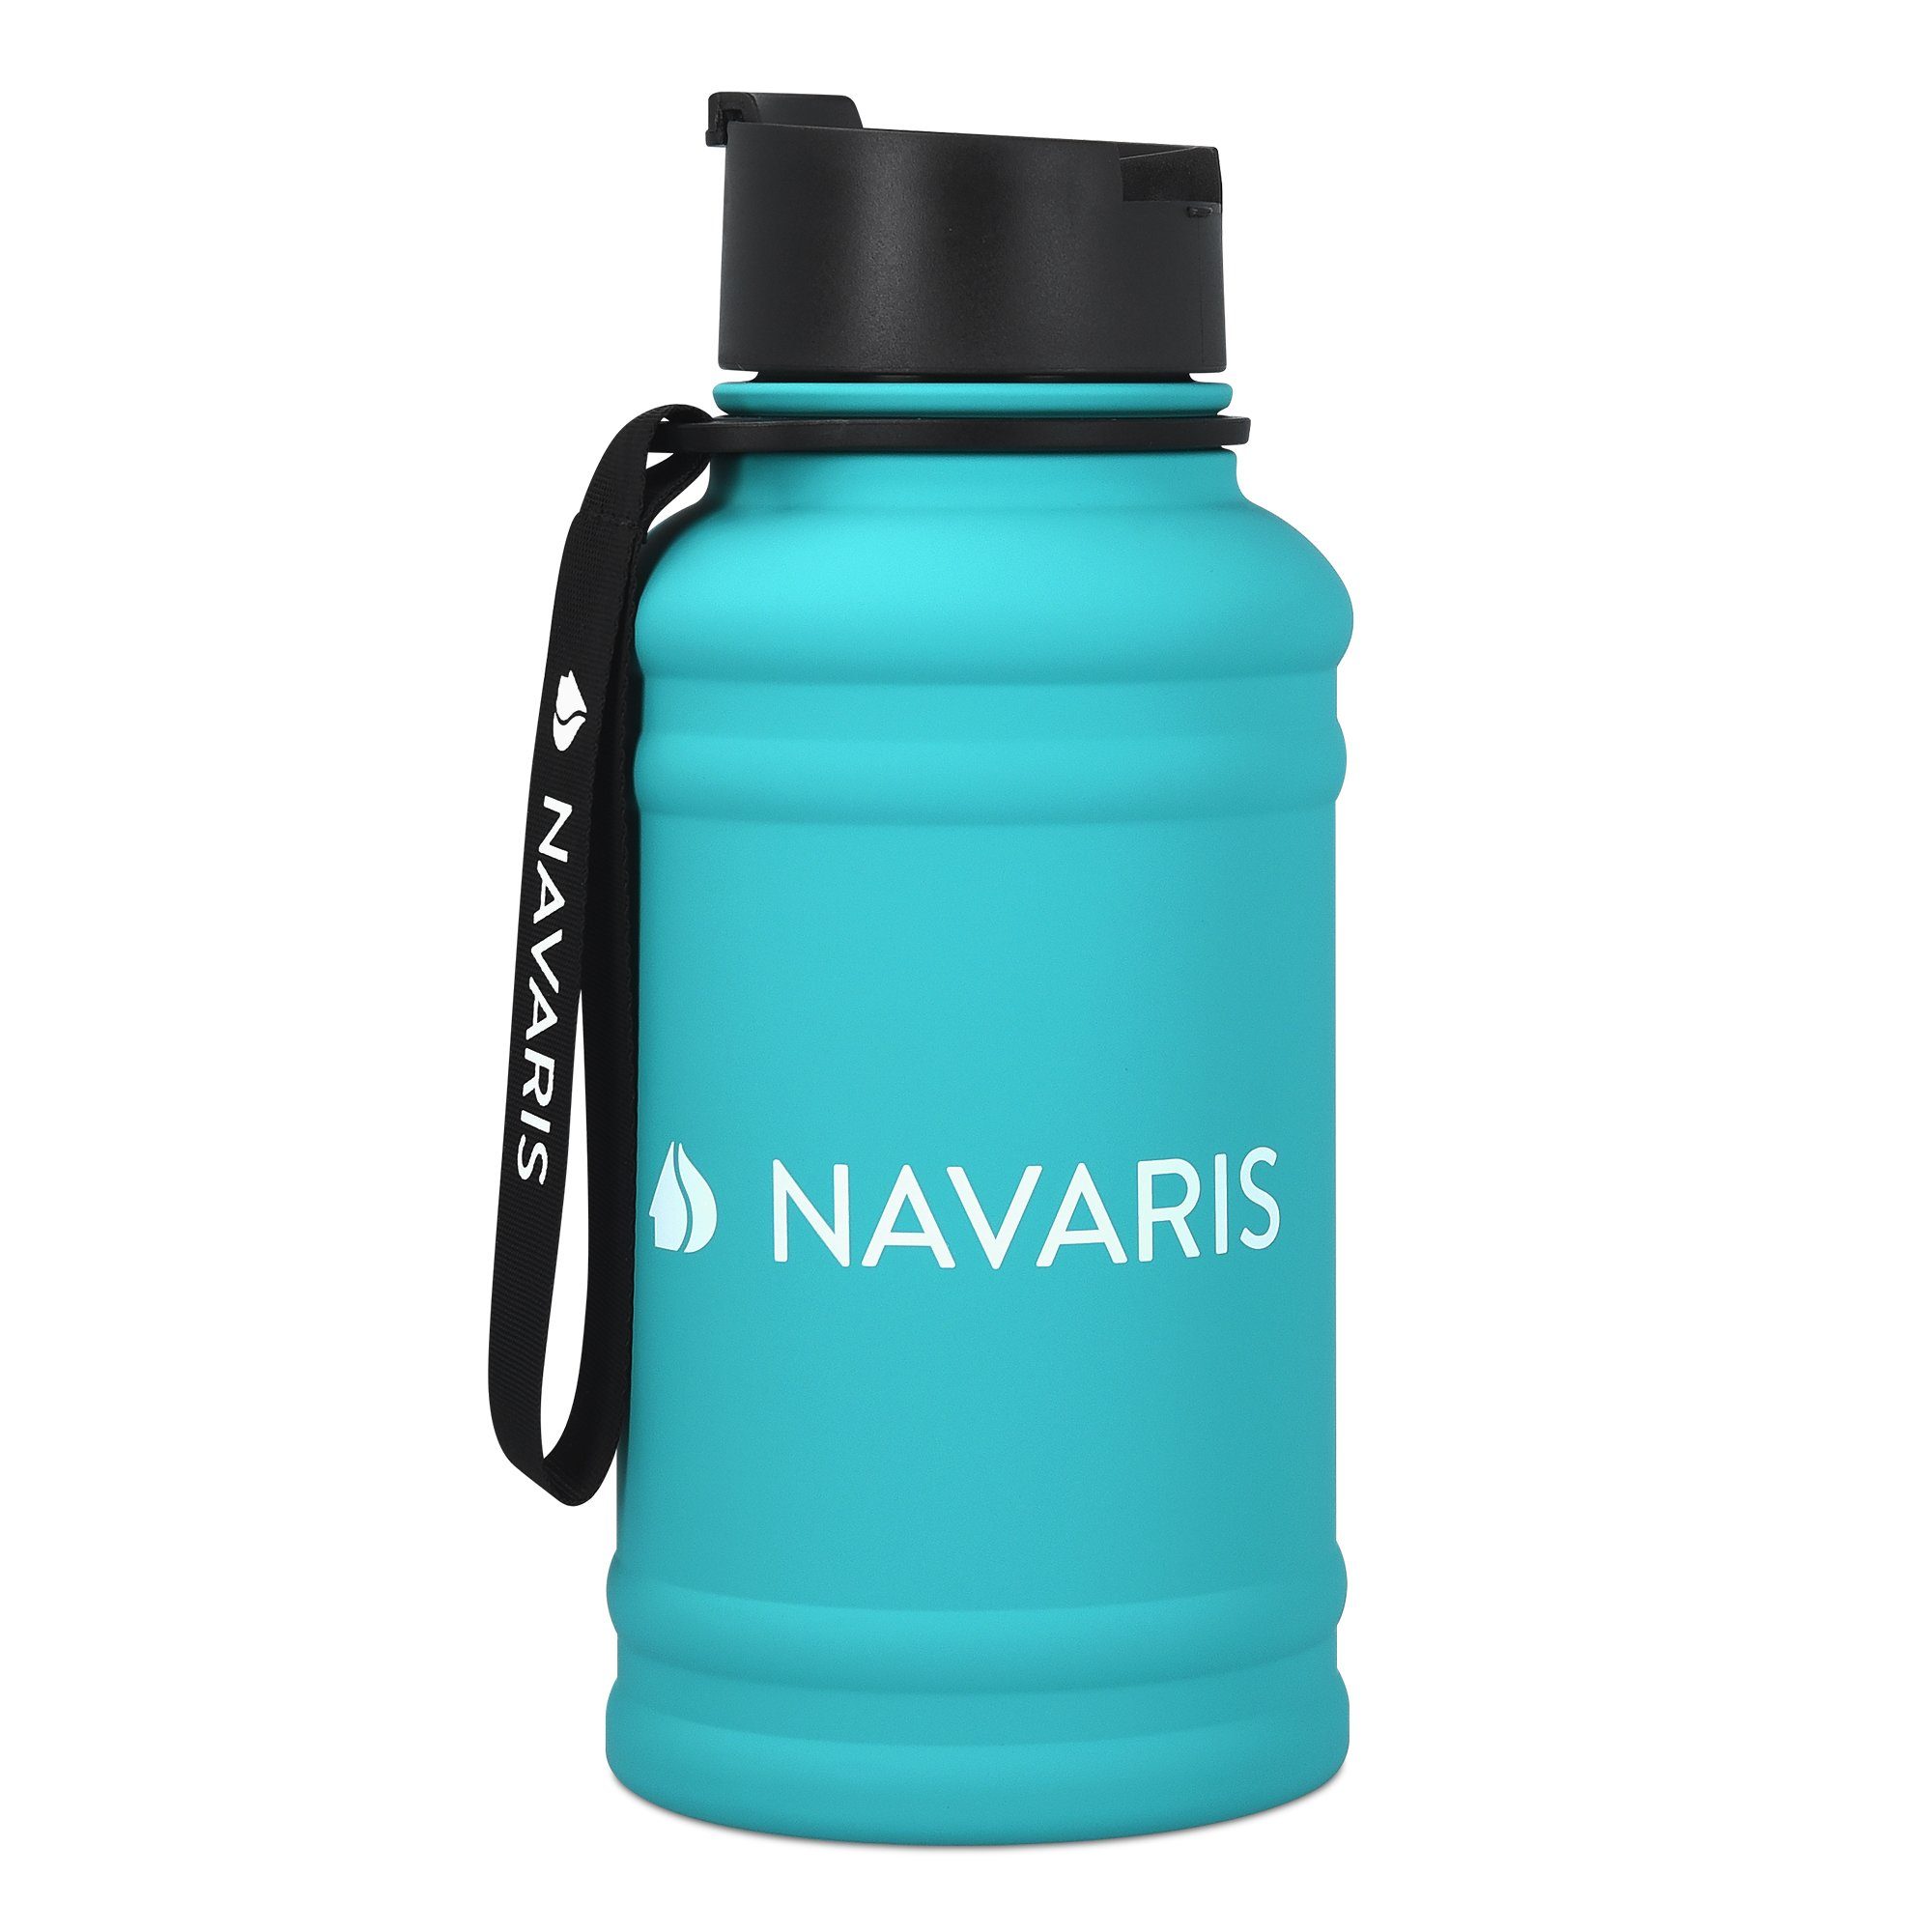 Navaris Trinkflasche, 1,3 Liter Wasserflasche - Gym Bottle - Sport Flasche  Wasserflasche Water Jug - stabile Sportflasche aus Edelstahl online kaufen  | OTTO